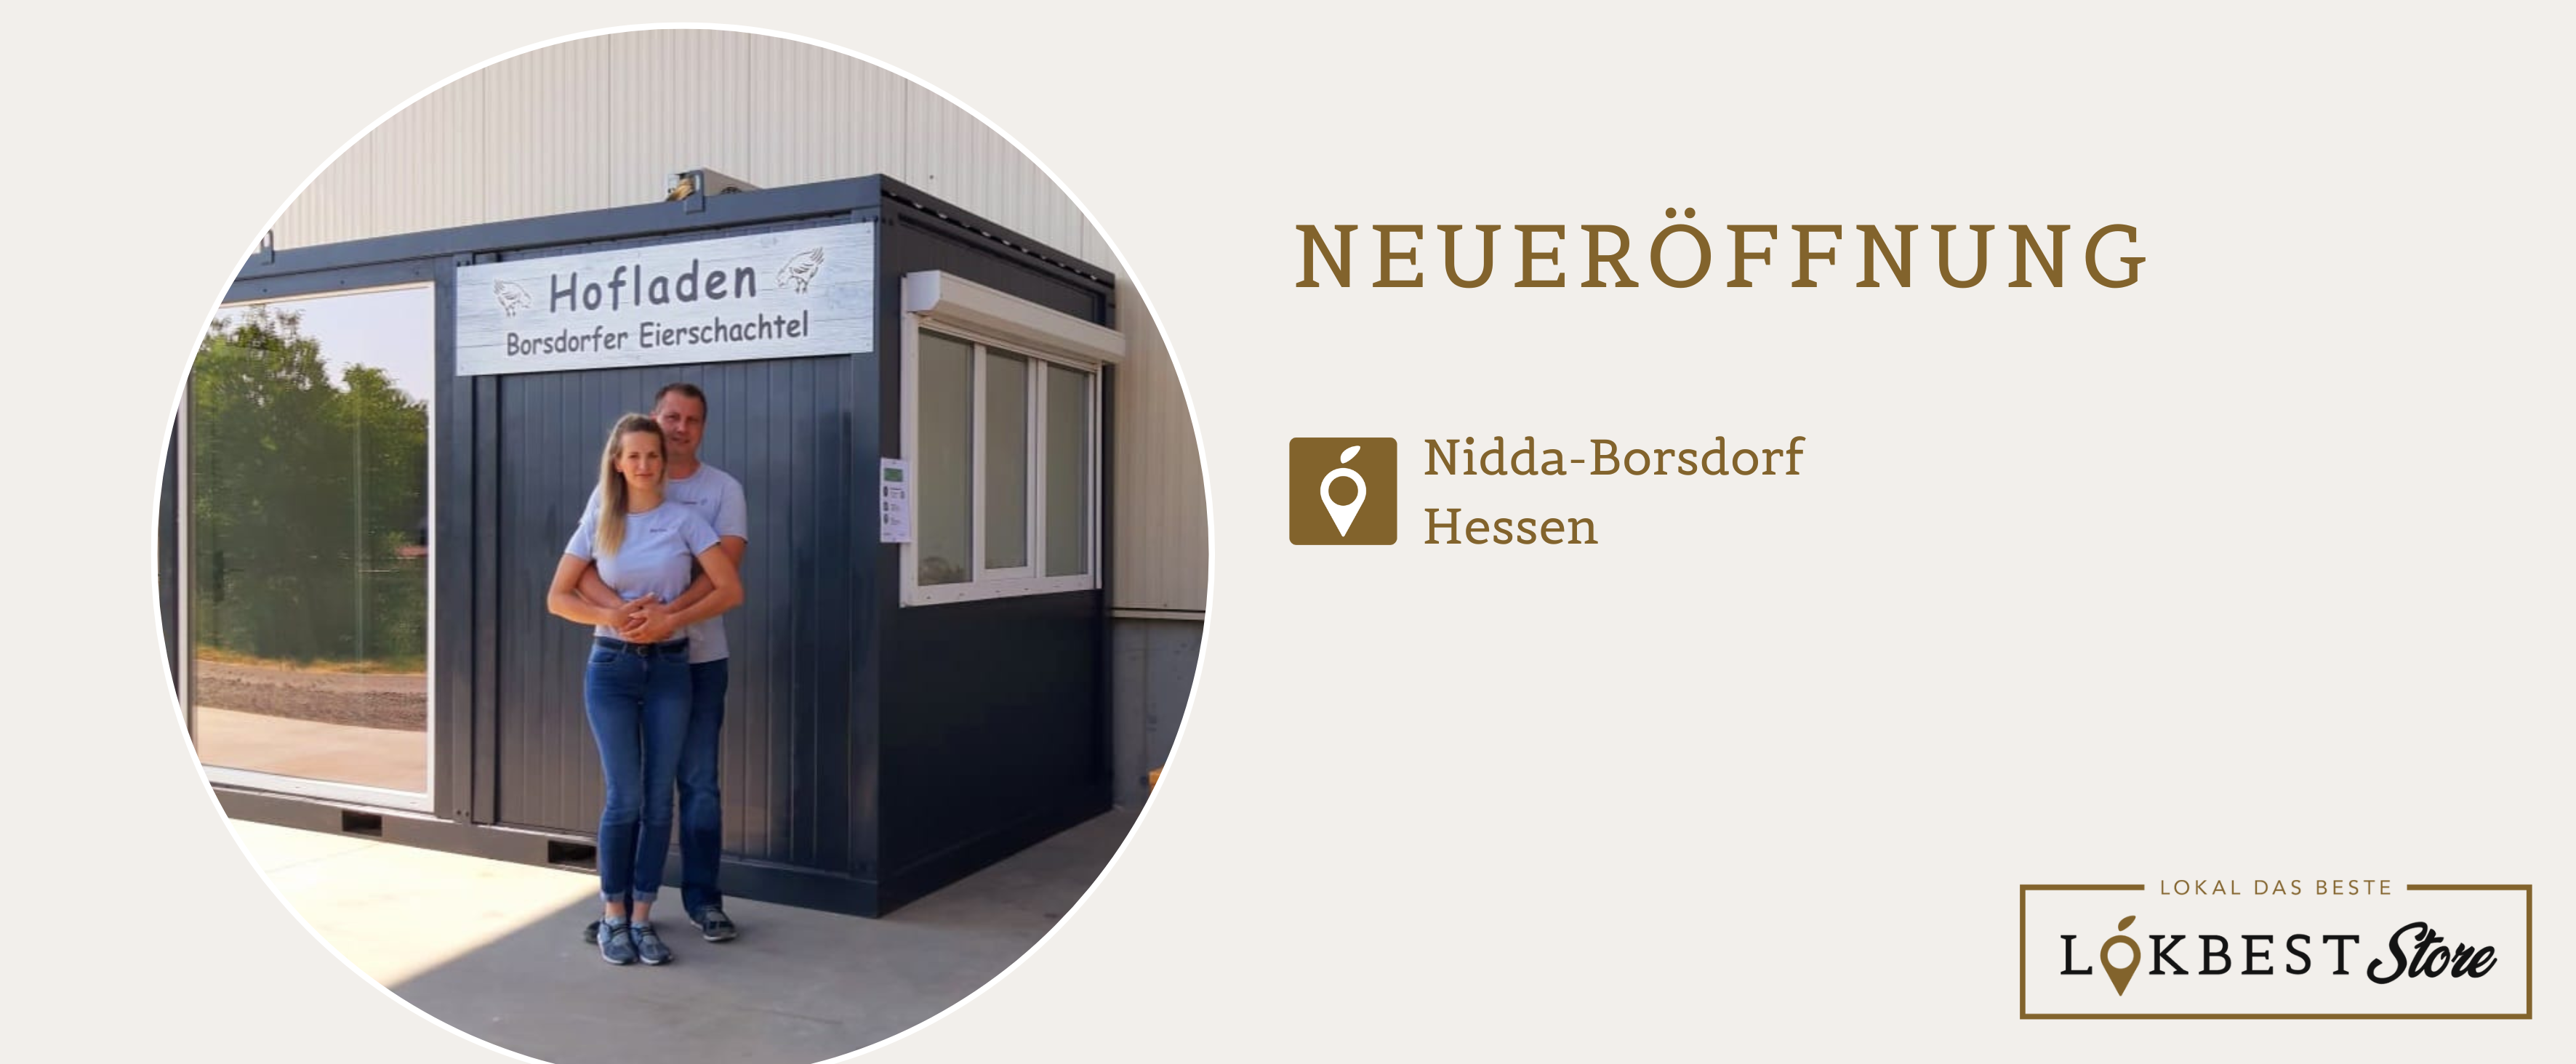 Einen LOKBEST Store gibt es nun auch in Hessen